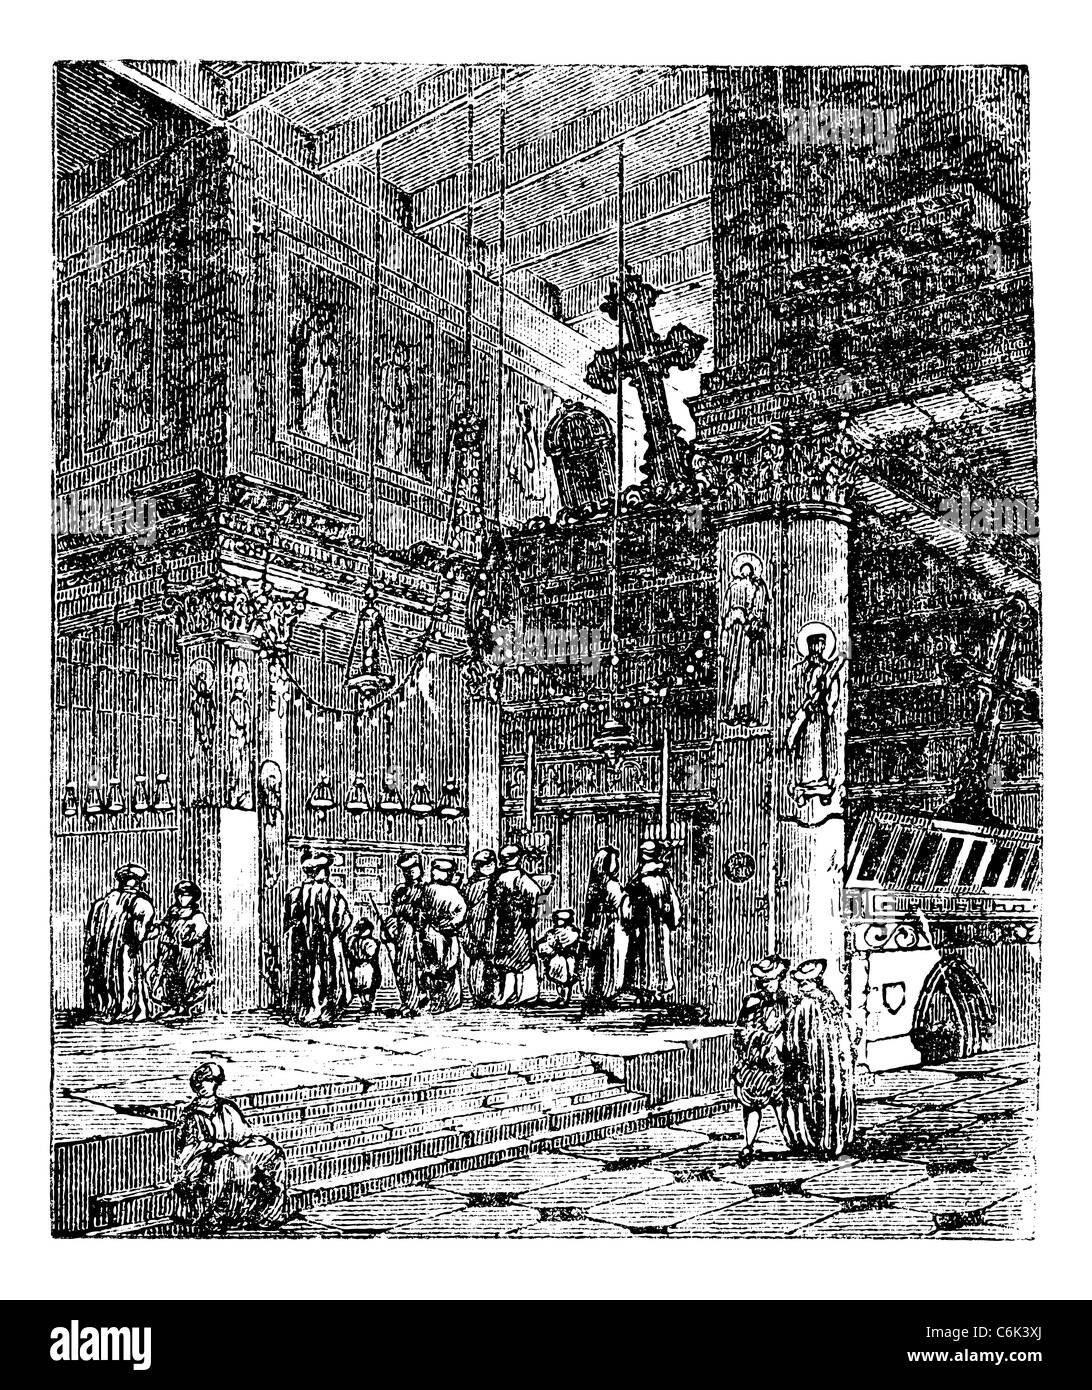 Die Geburtskirche, Kirche, Israel, alte gravierte Darstellung der Geburtskirche Bethlehem, Israel, in den 1890er Jahren Stockfoto